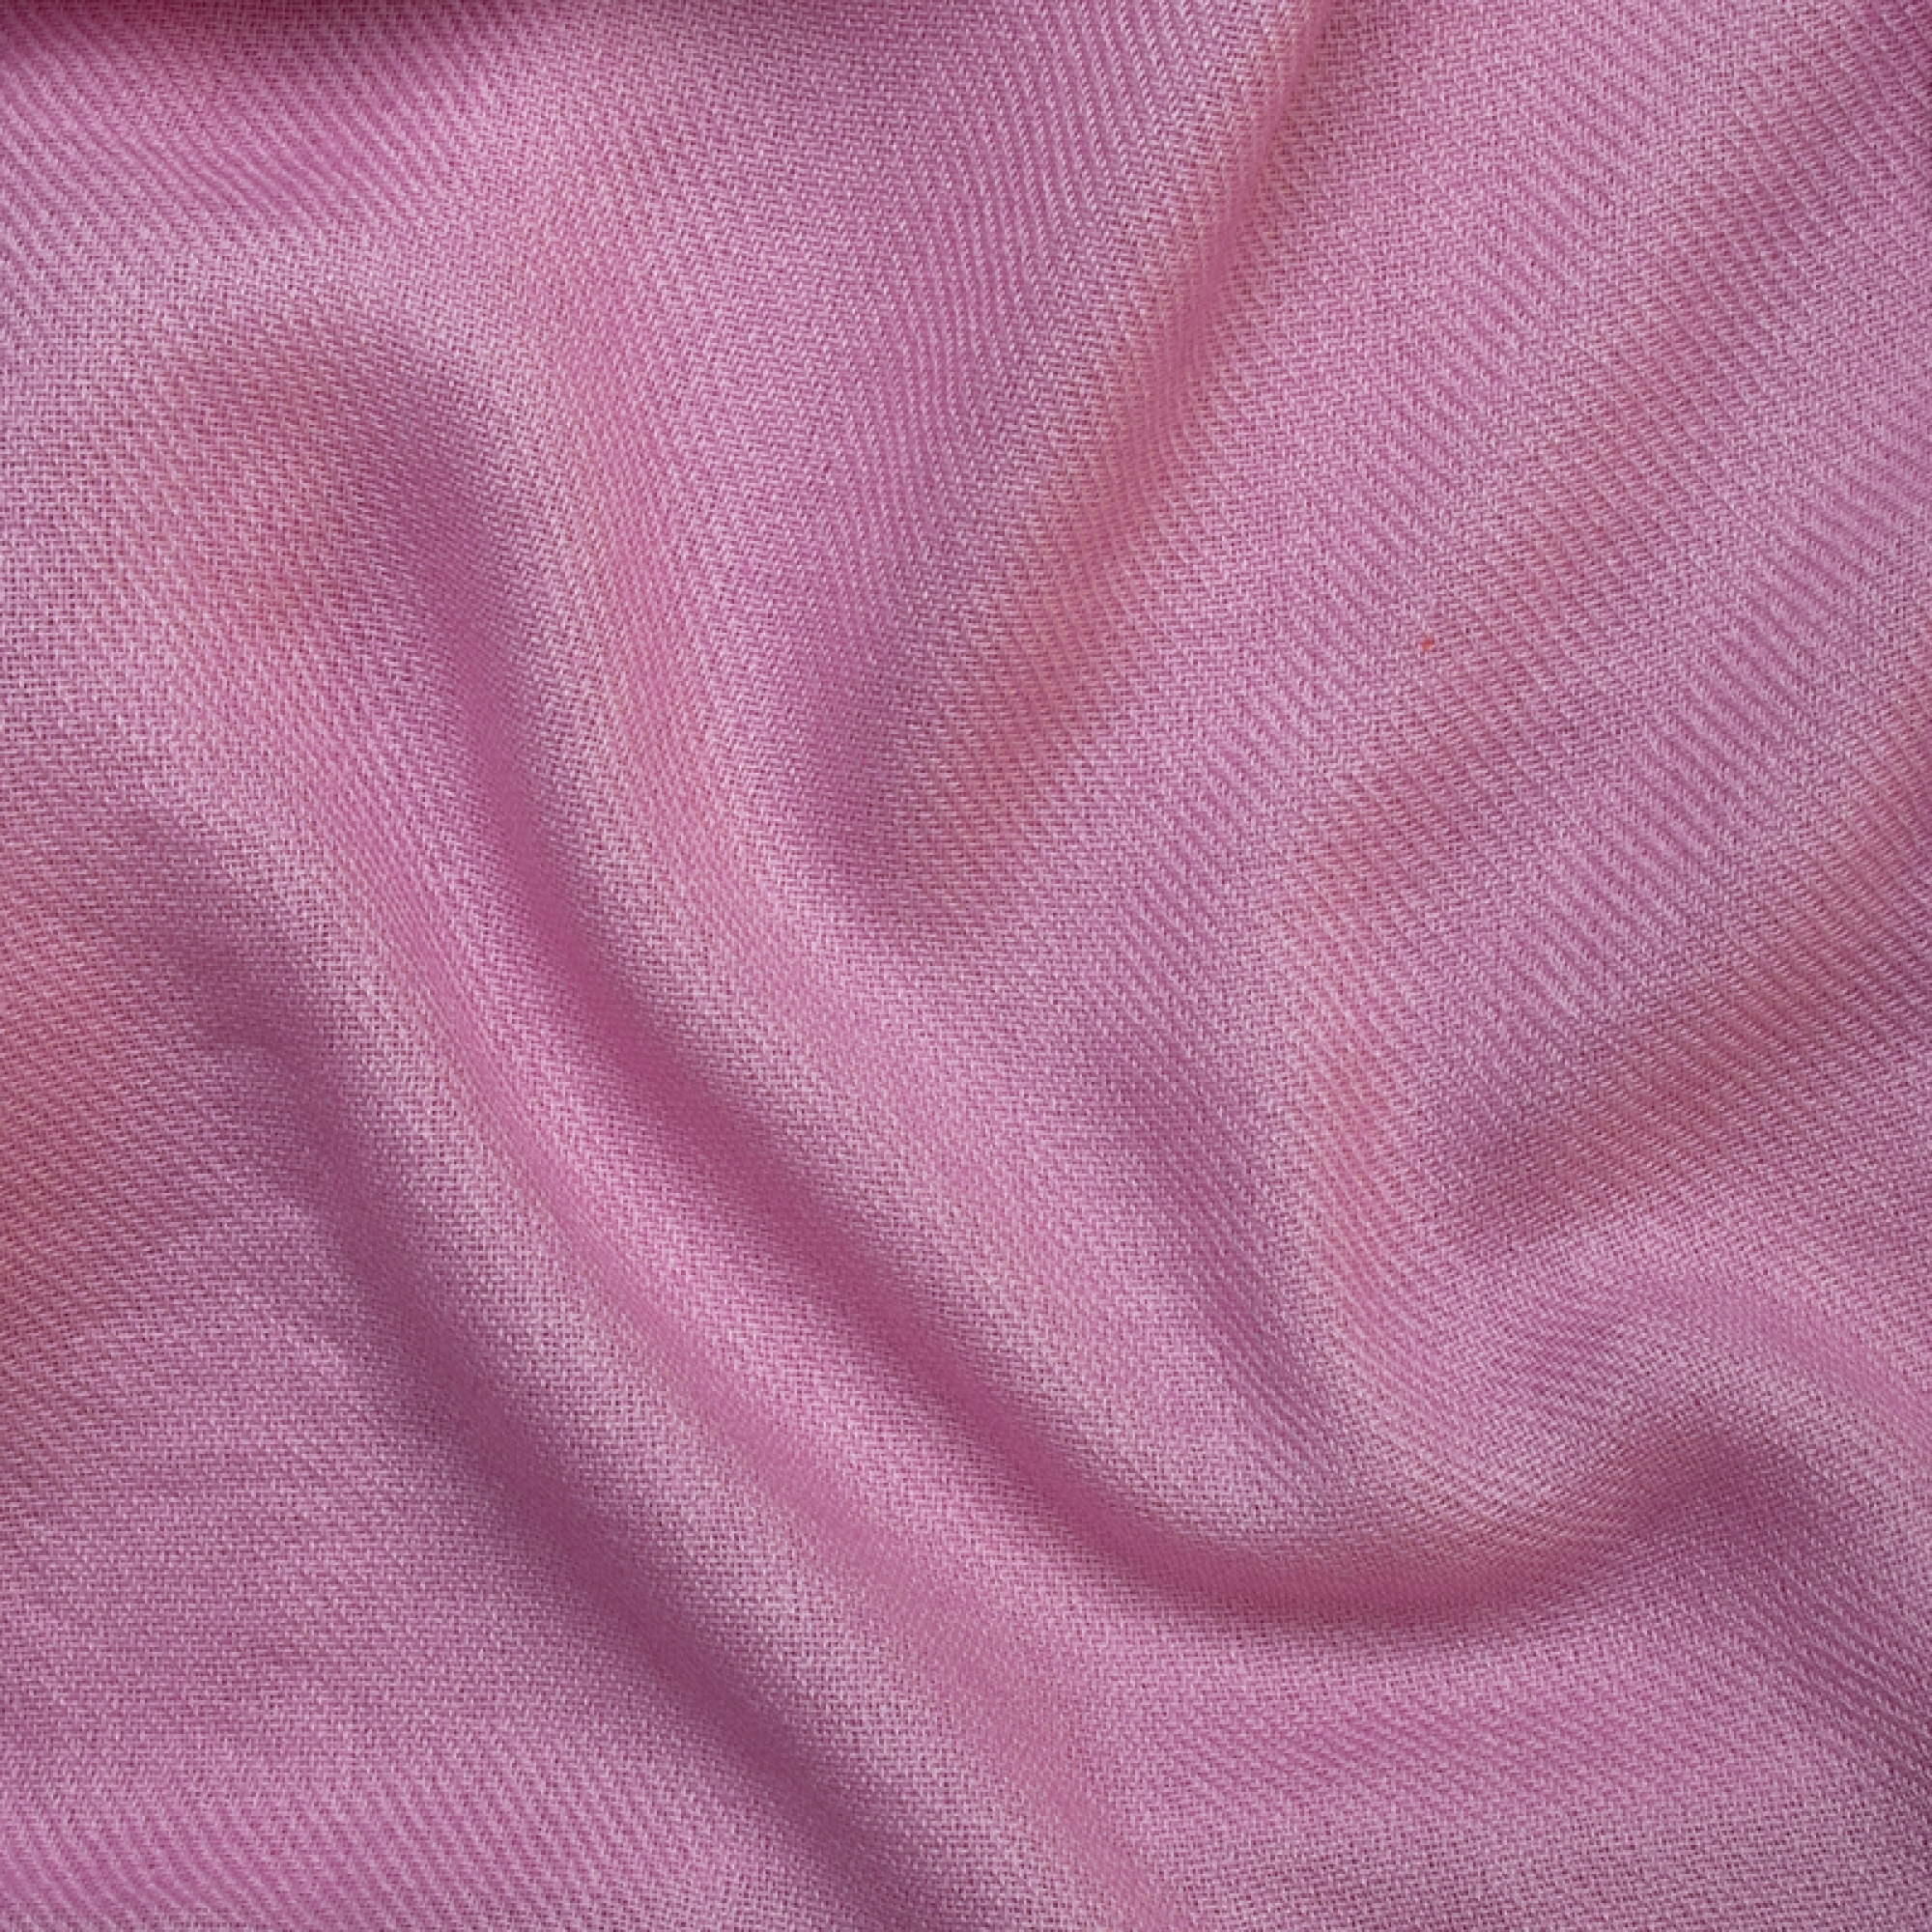 Cashmere accessori cocooning toodoo plain m 180 x 220 rosa 180 x 220 cm